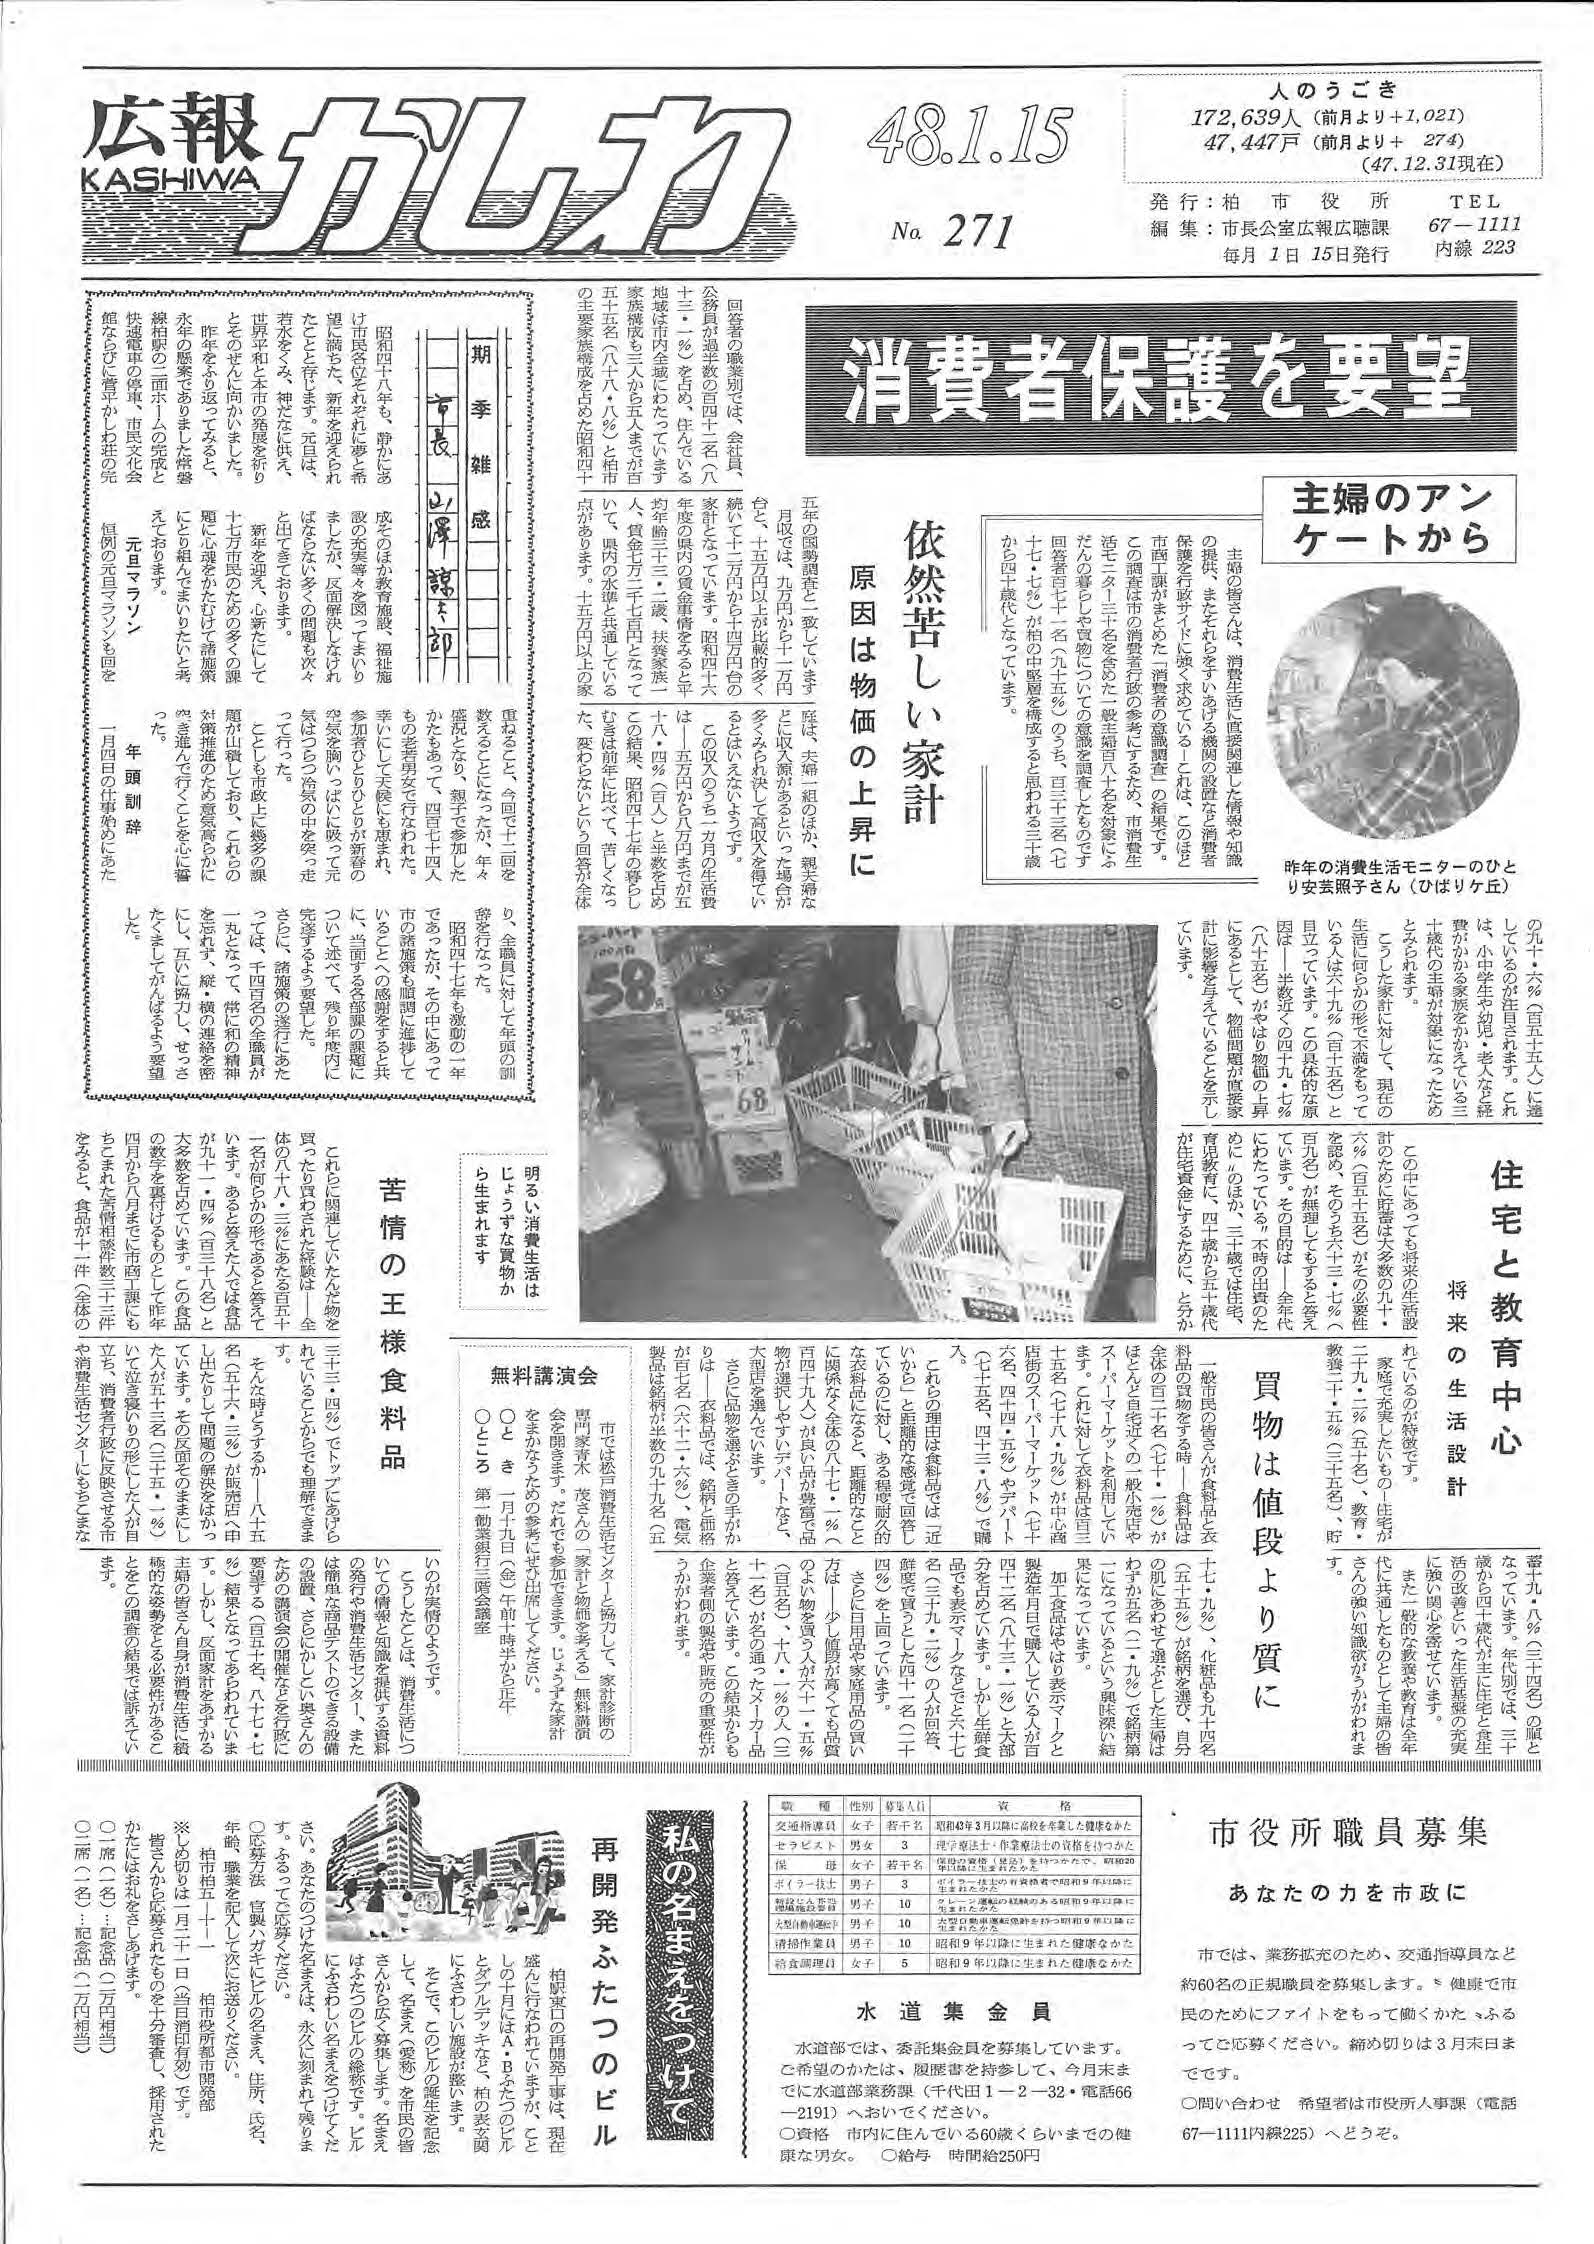 広報かしわ　昭和48年1月15日発行　271号